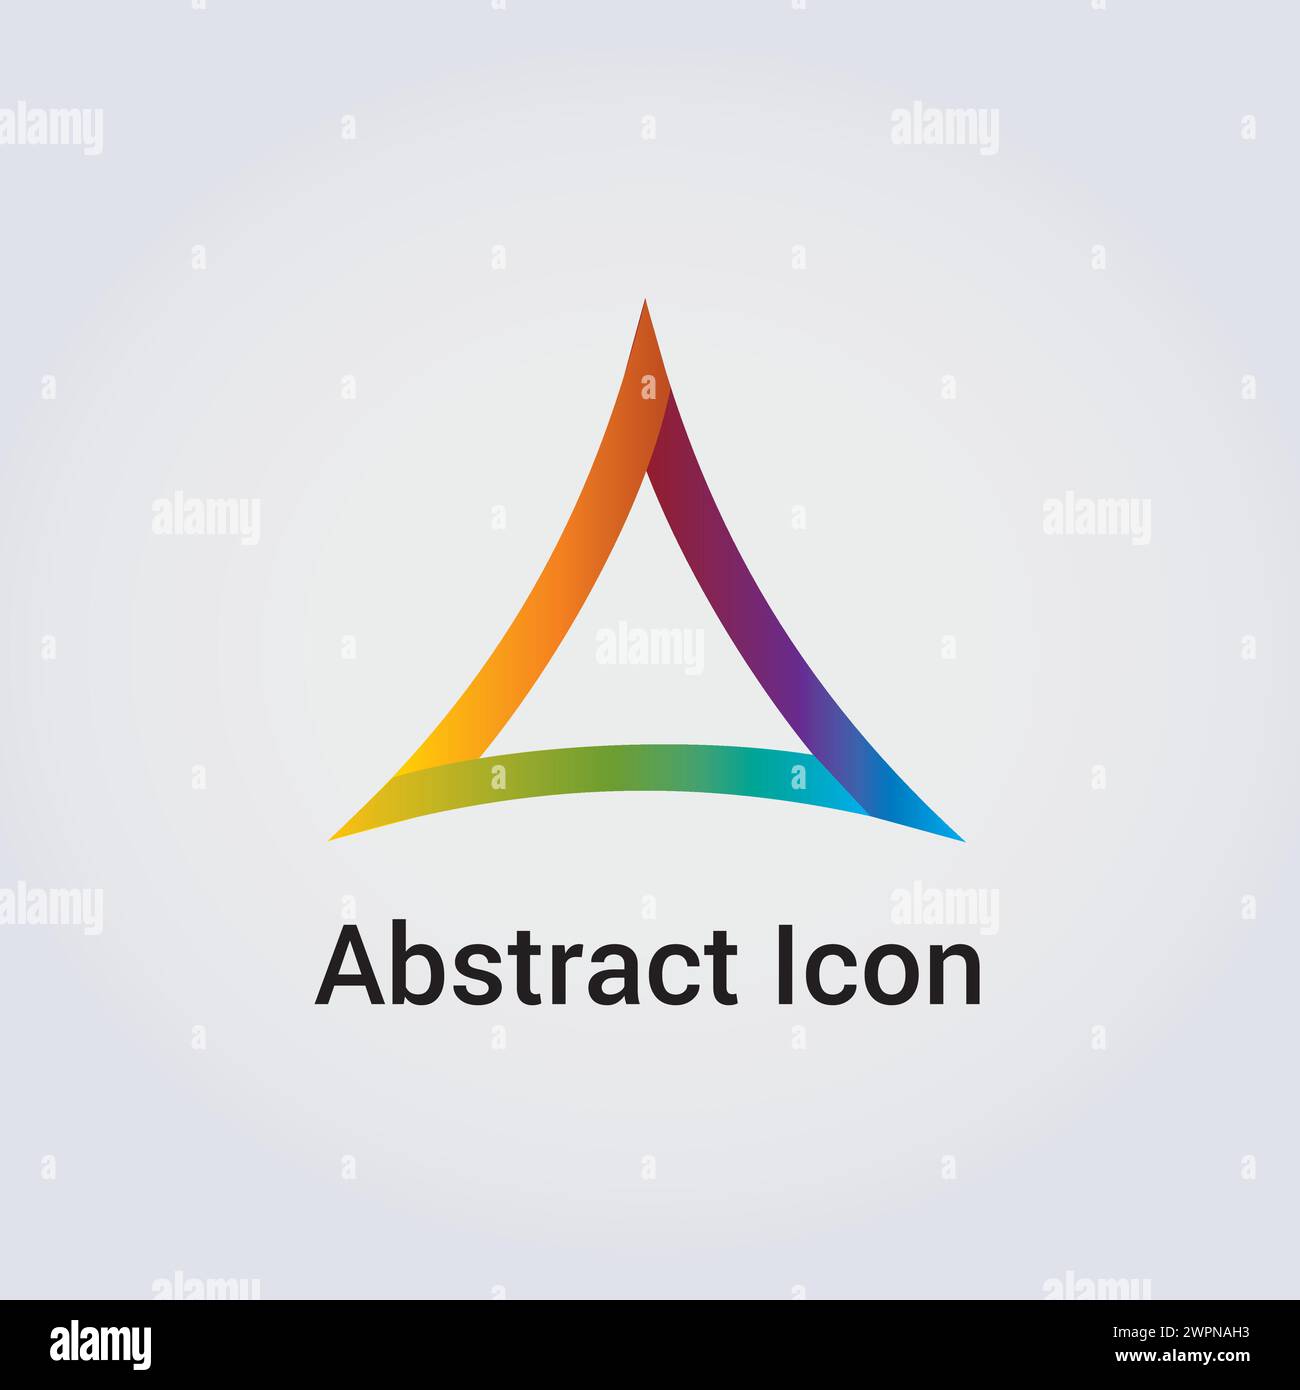 Icona astratta Design del logo forme primarie triangolo cerchio a stella triangolo barra multifunzione varie rete di comunicazione Rainbow Colors vettoriale Illustrazione Vettoriale